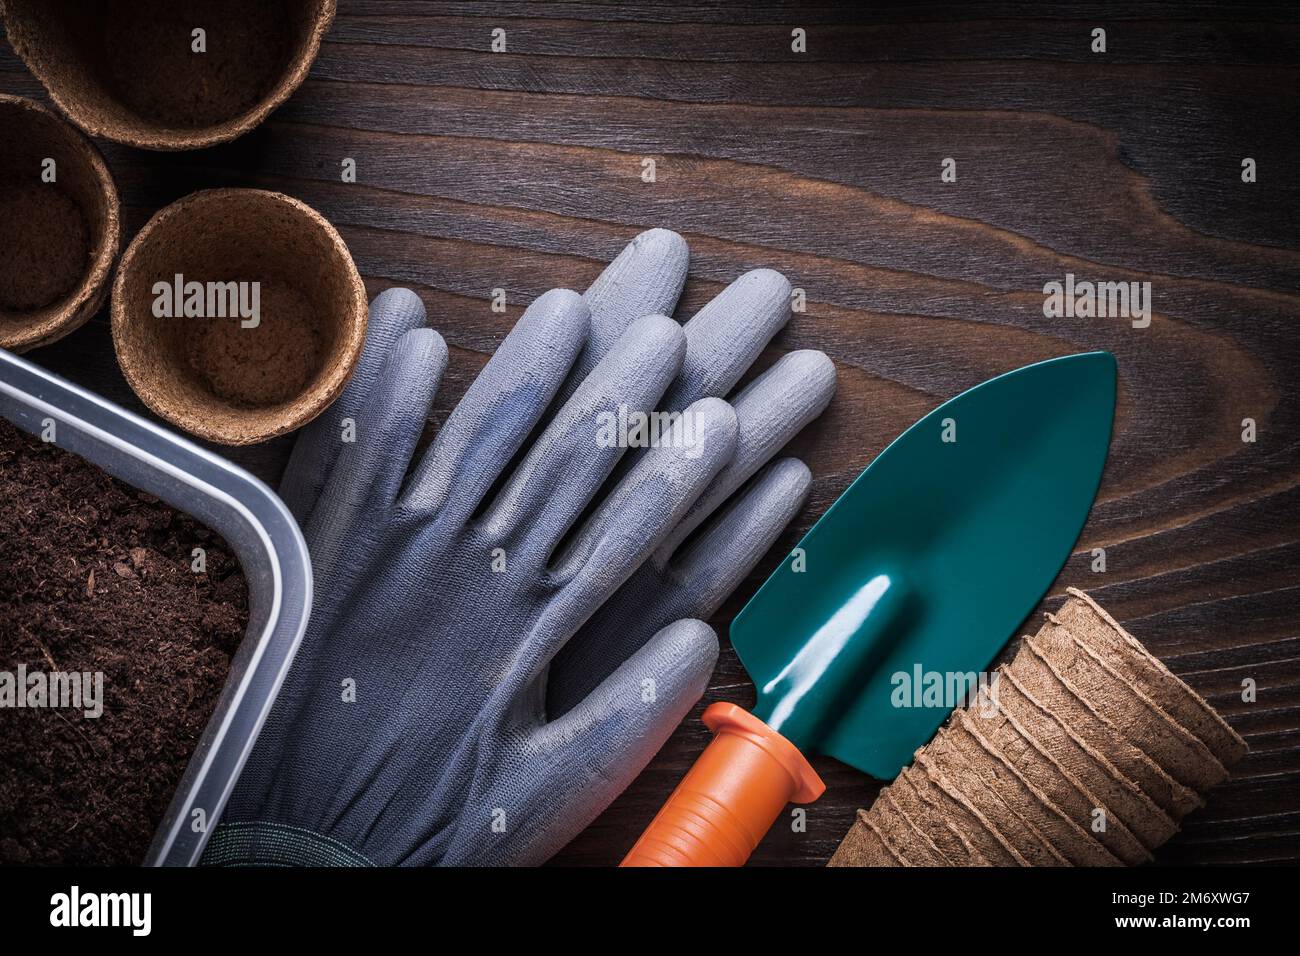 Caja de jardinería de guantes de goma de pala de mano con vidrios de suelo y turba en concepto de agricultura de fondo de madera vintage. Foto de stock